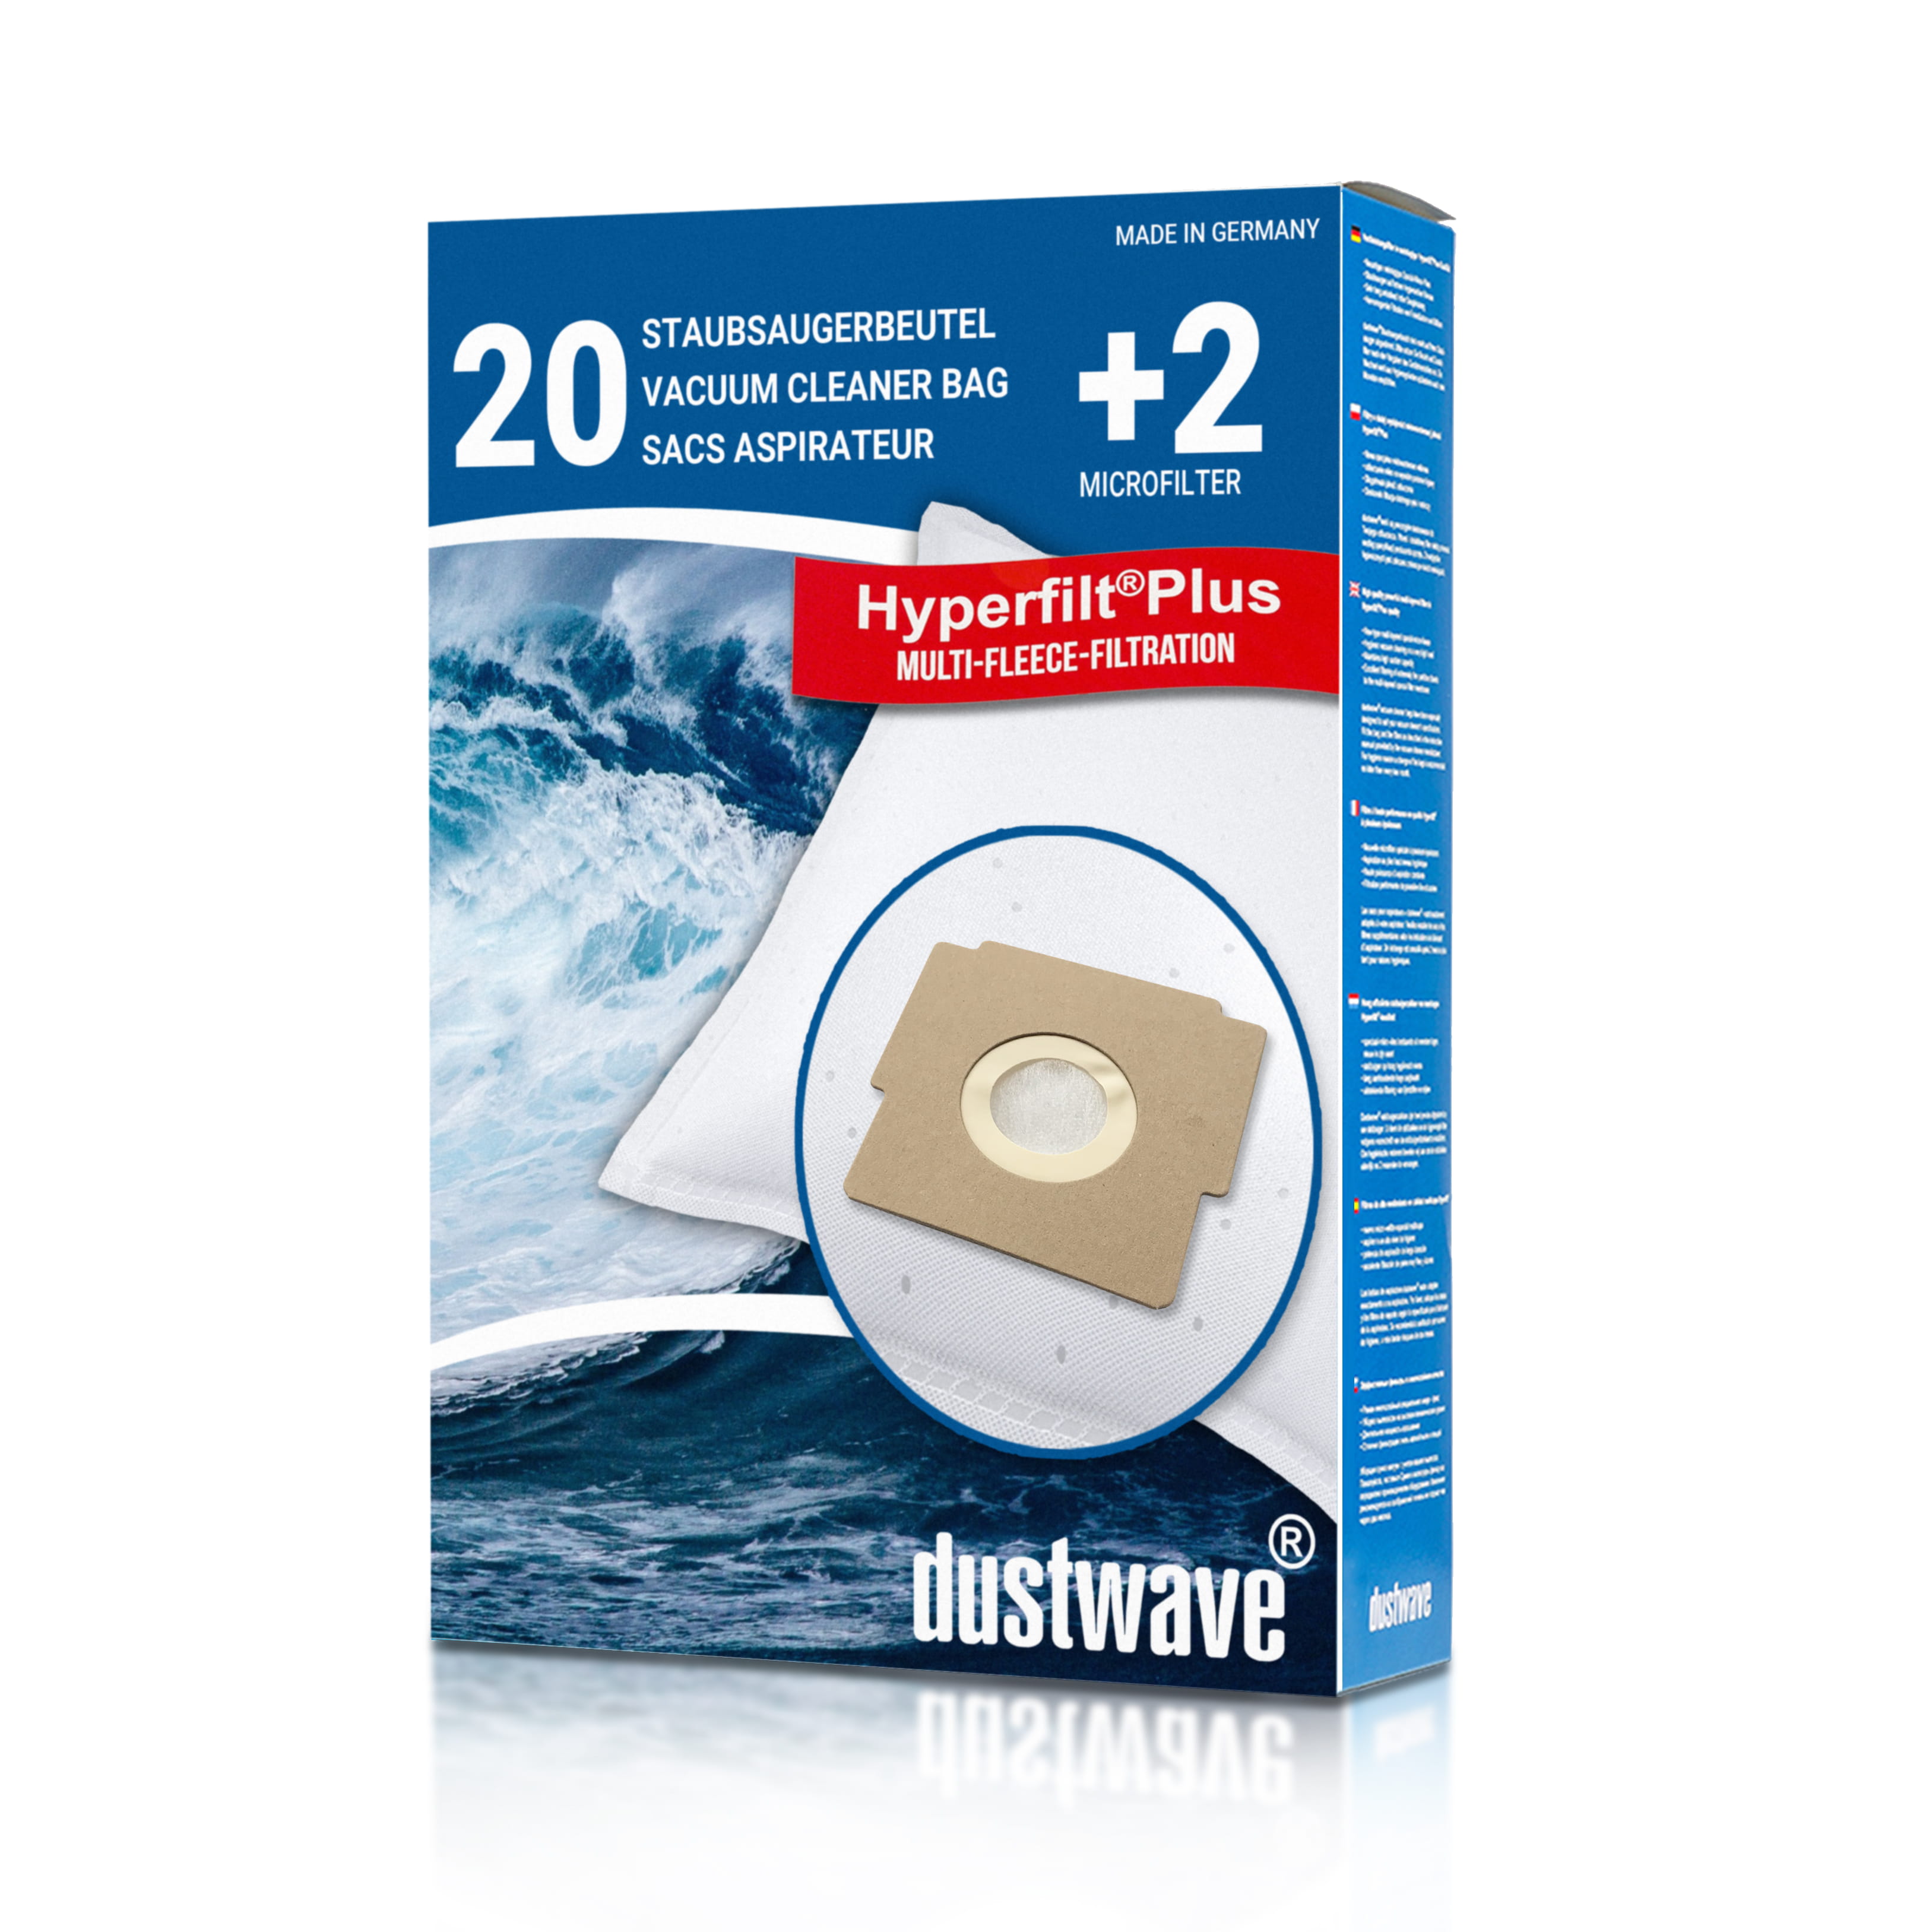 Dustwave® 20 Staubsaugerbeutel für SWIRL Z 111 - hocheffizient, mehrlagiges Mikrovlies mit Hygieneverschluss - Made in Germany